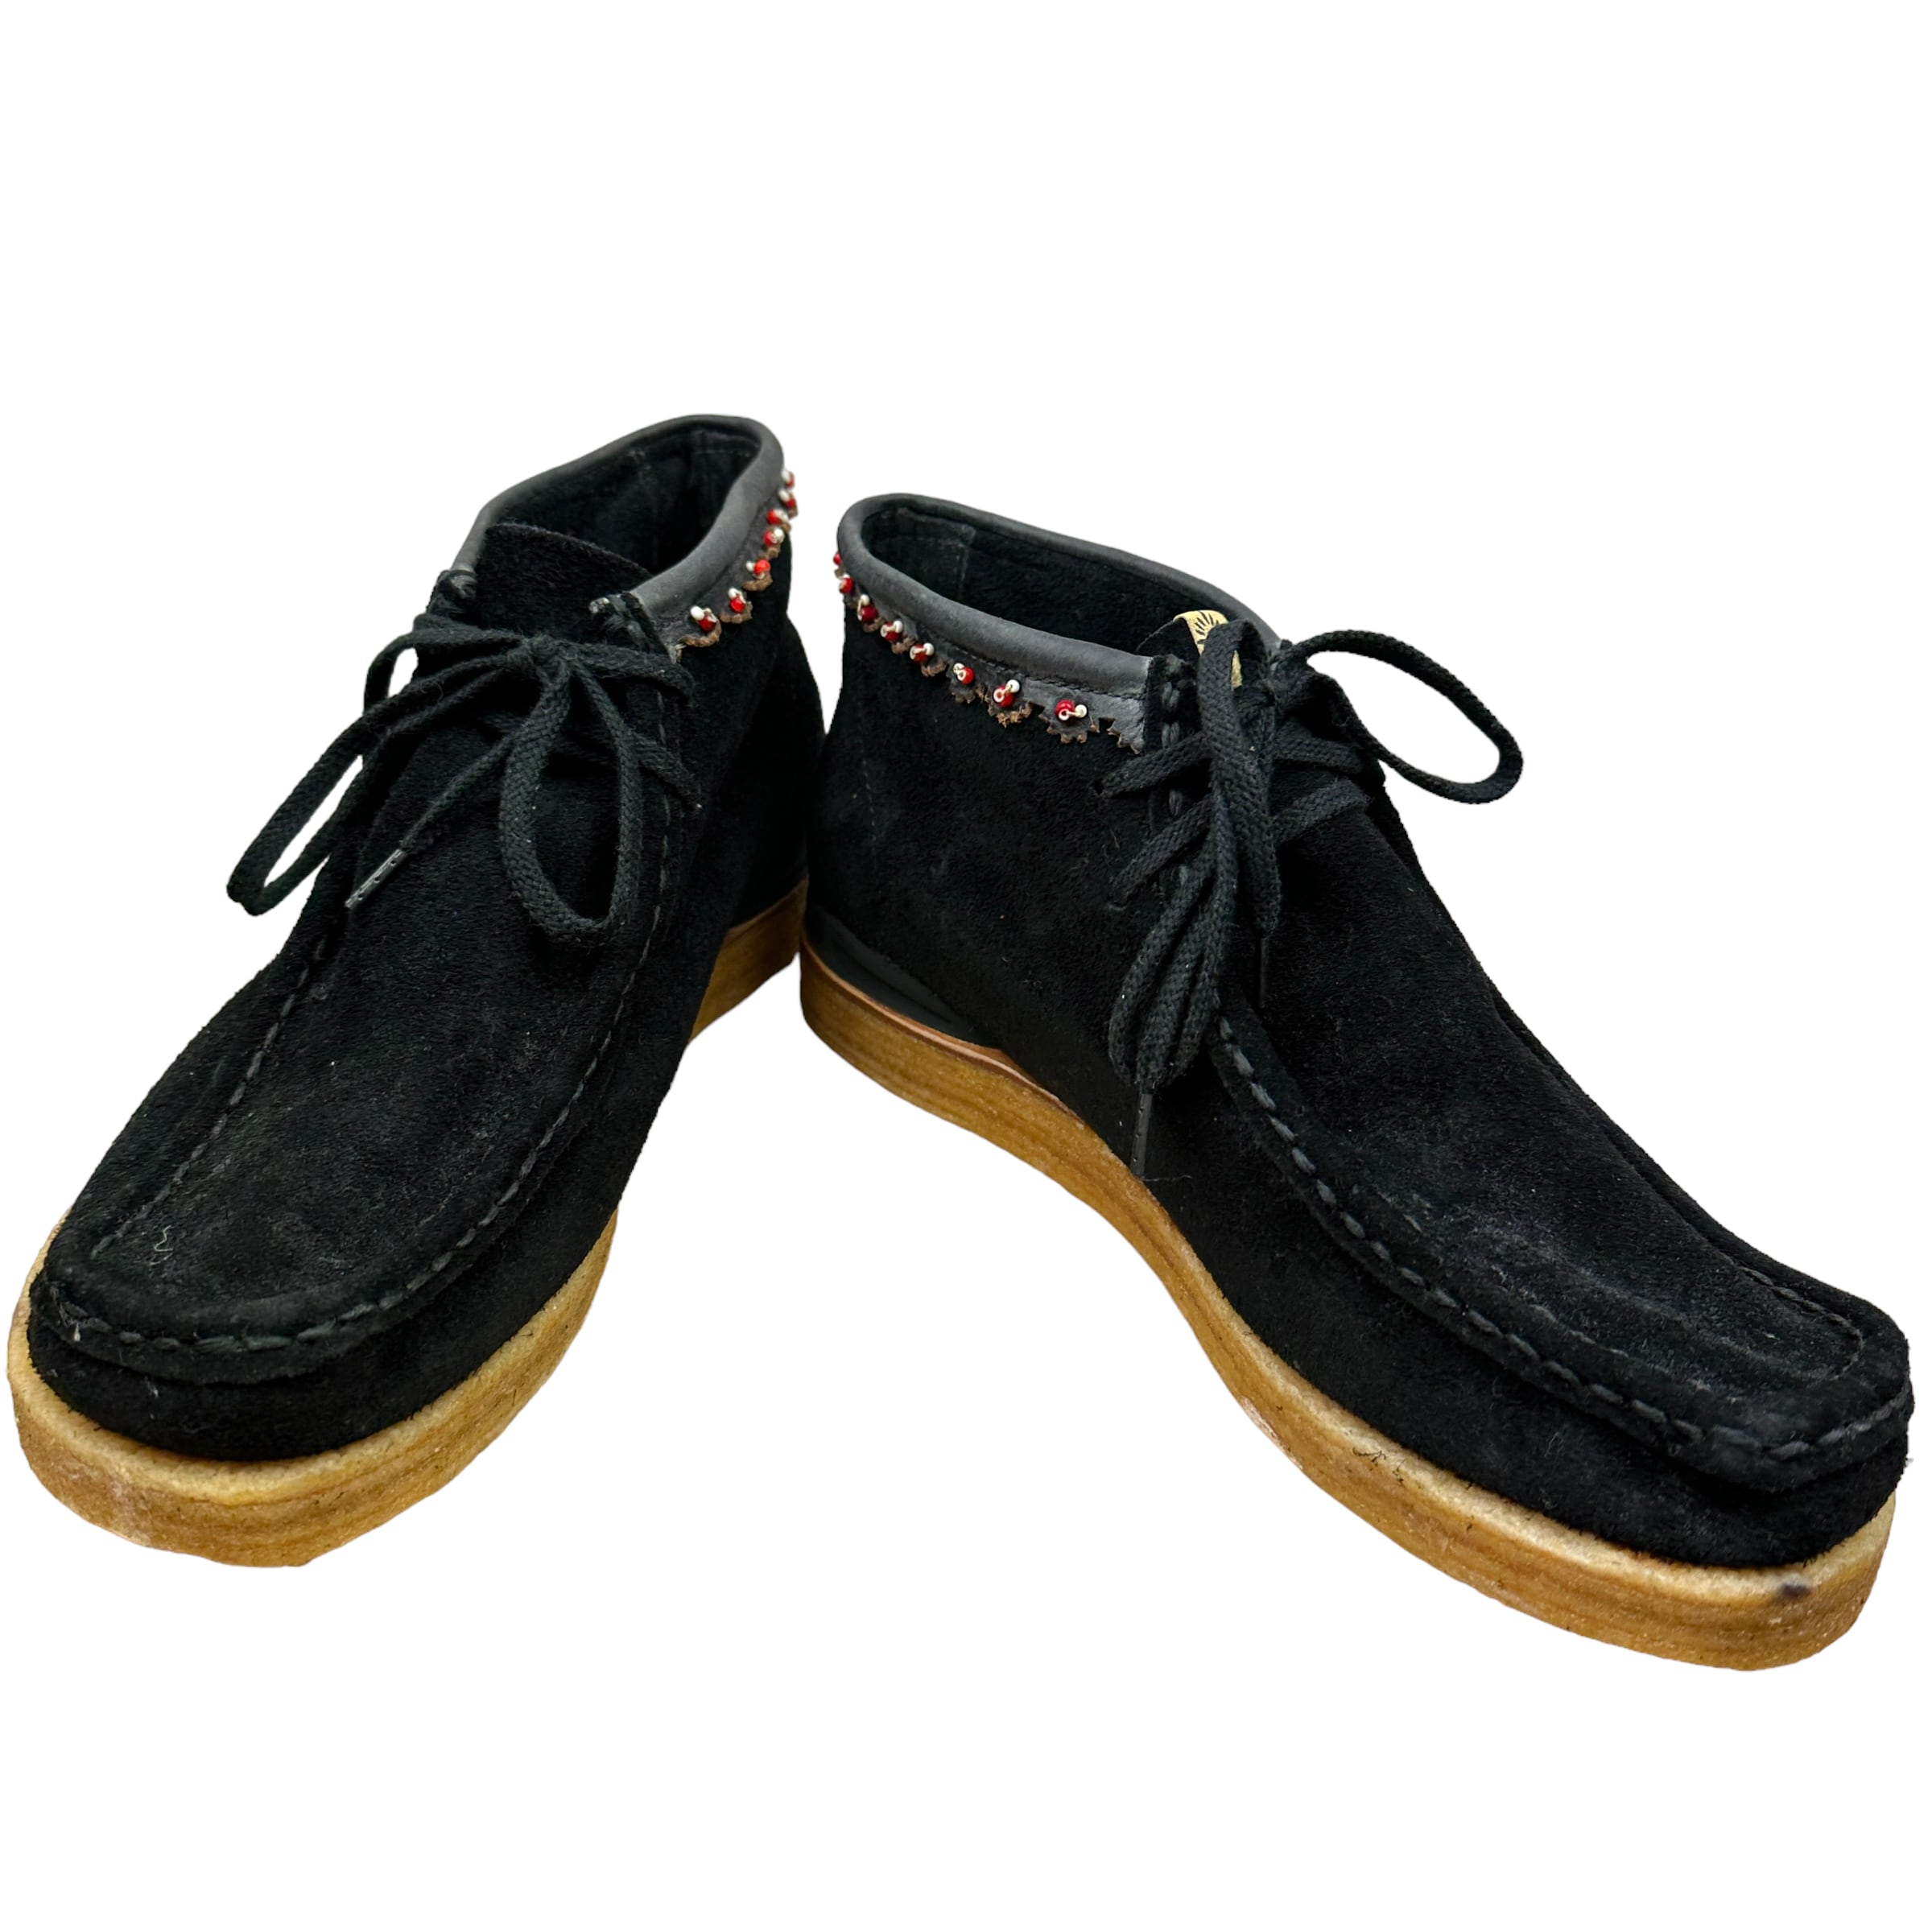 靴/シューズビズビム／VISVIM チャッカブーツ シューズ 靴 メンズ 男性 男性用スエード スウェード レザー 革 本革 ブラック 黒  BEUYS TREKKER FOLK ワラビー モックトゥ クレープソール